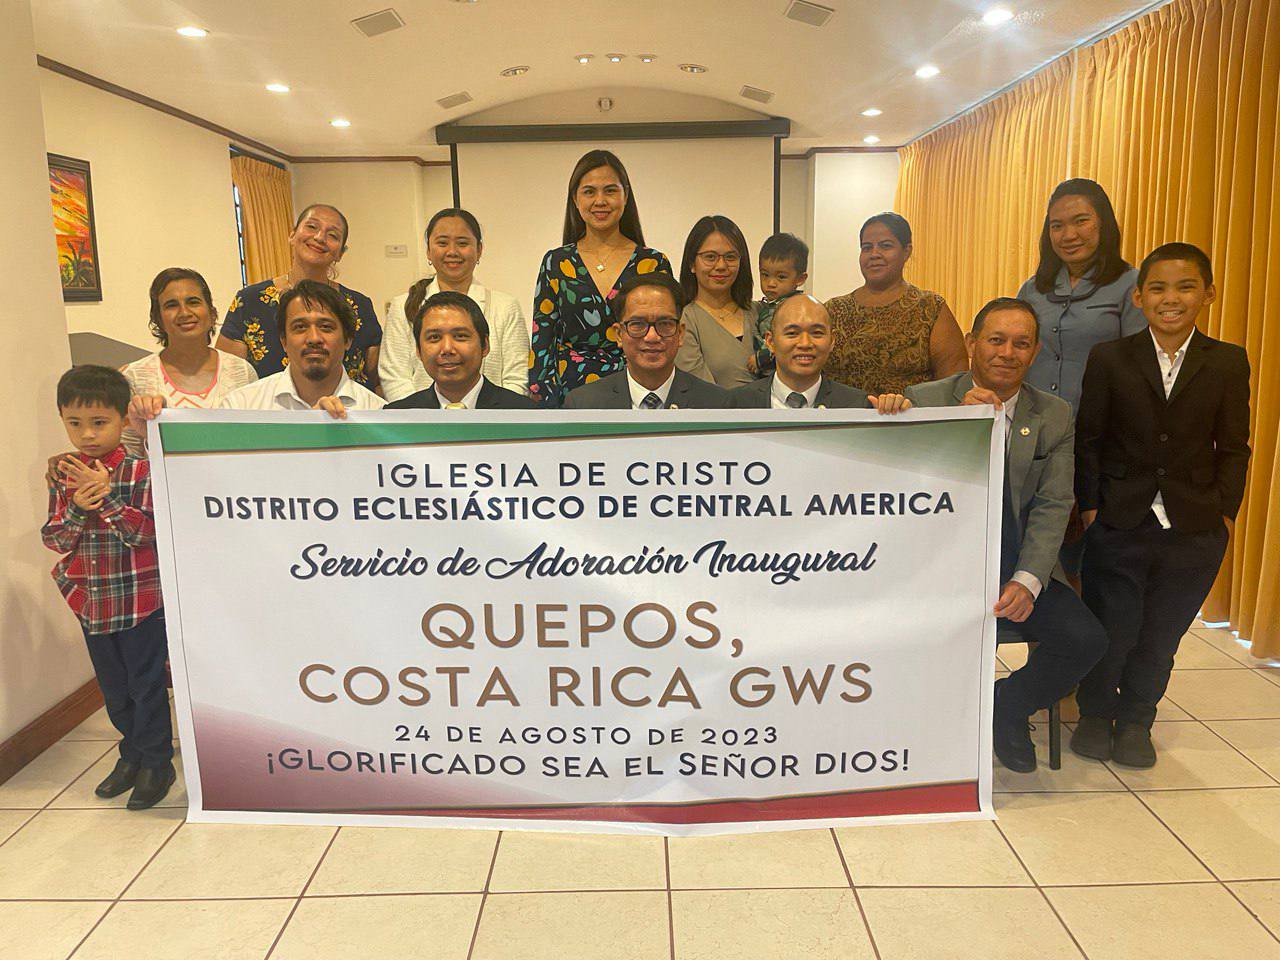 Iglesia Ni Cristo opens second GWS in Costa Rica